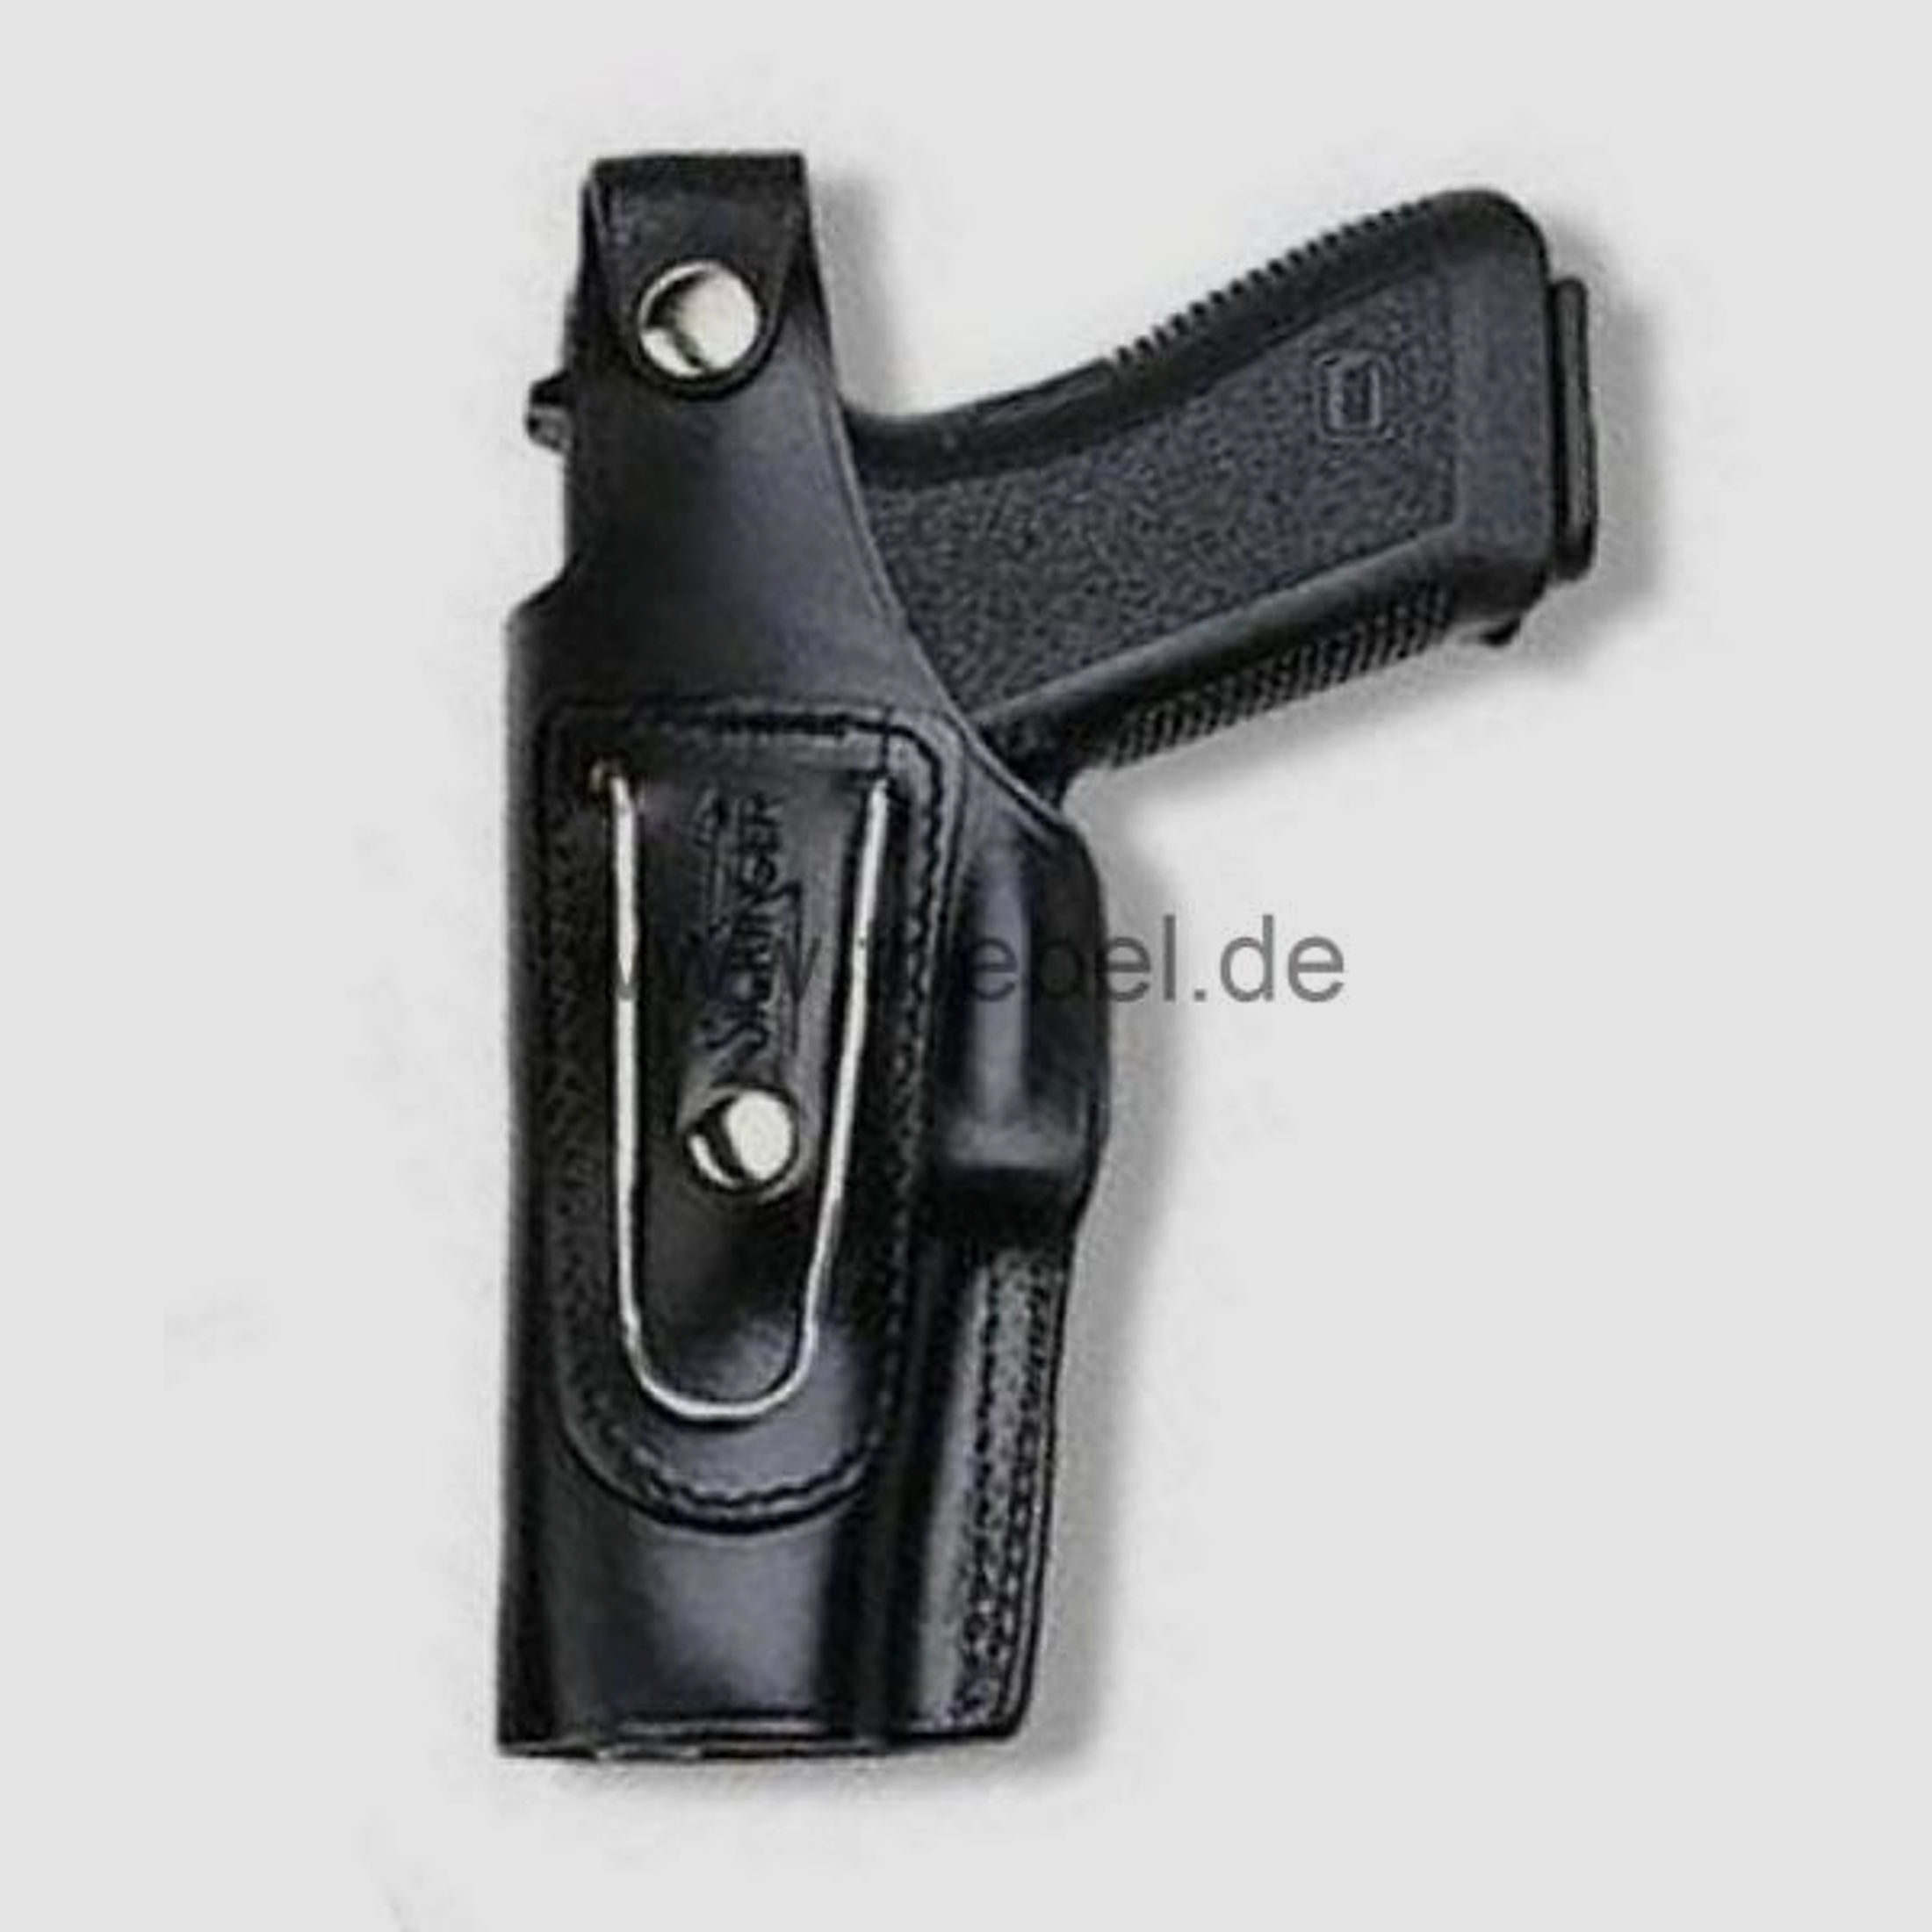 SICKINGER Holster (Leder) f. Glock 19/23/25/32/38/36 LINKS 62325-G-Man schwarz